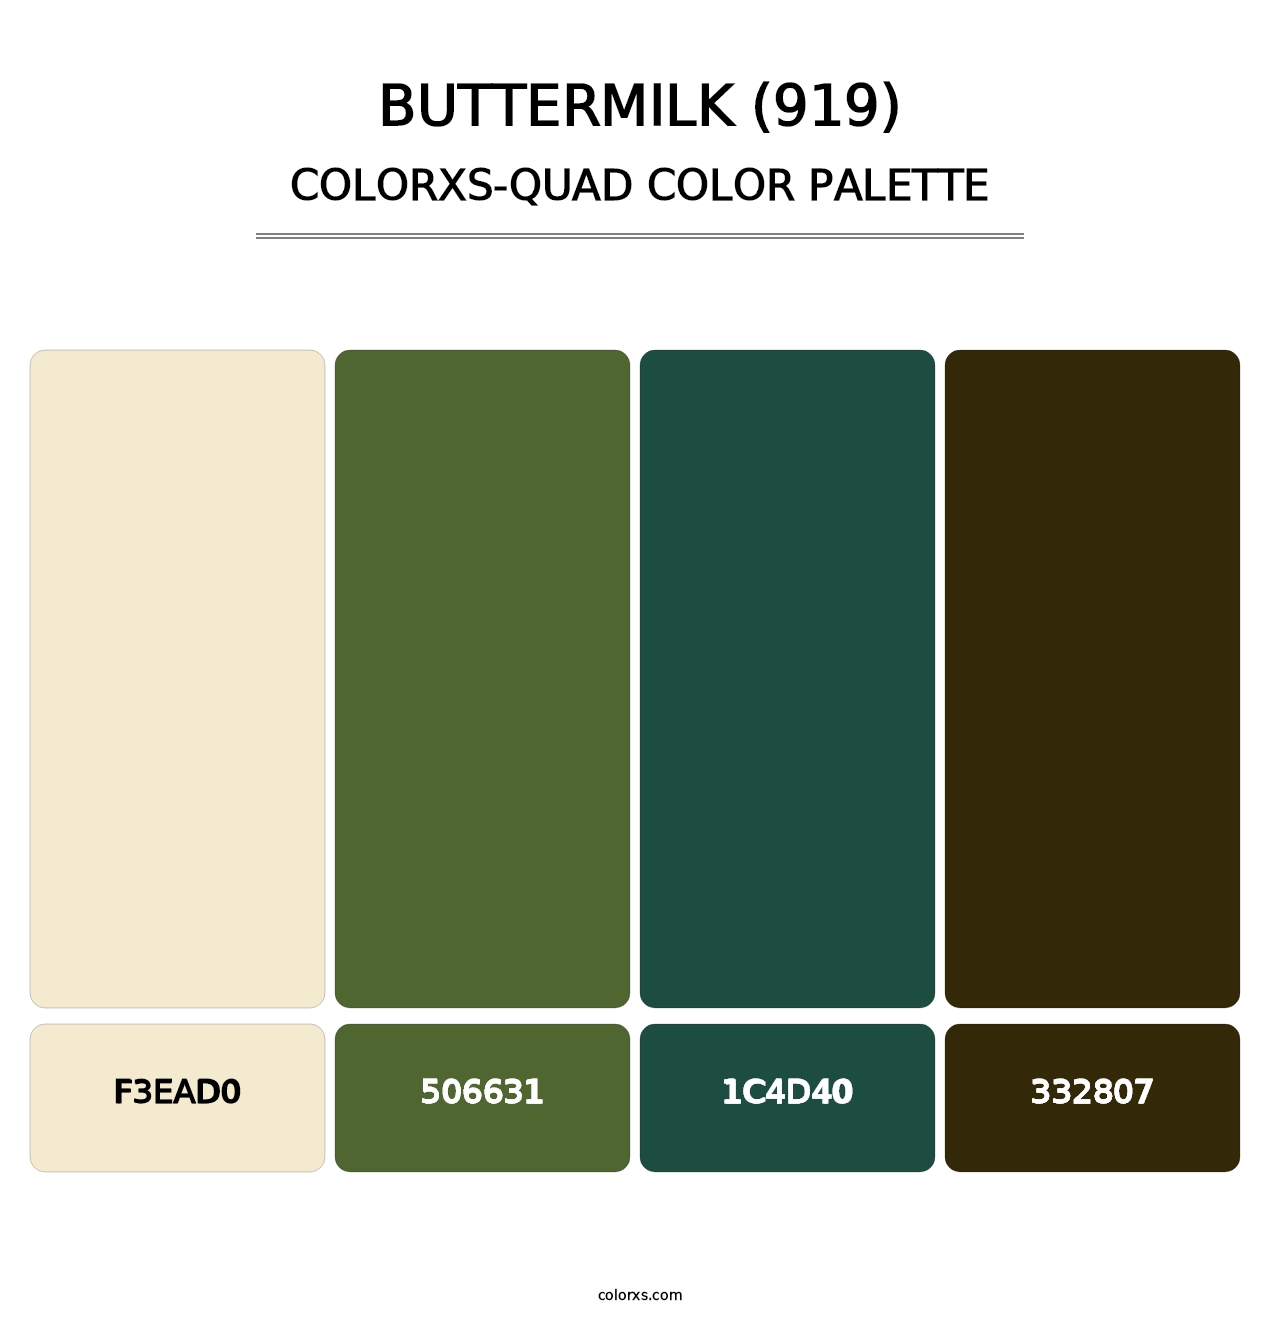 Buttermilk (919) - Colorxs Quad Palette